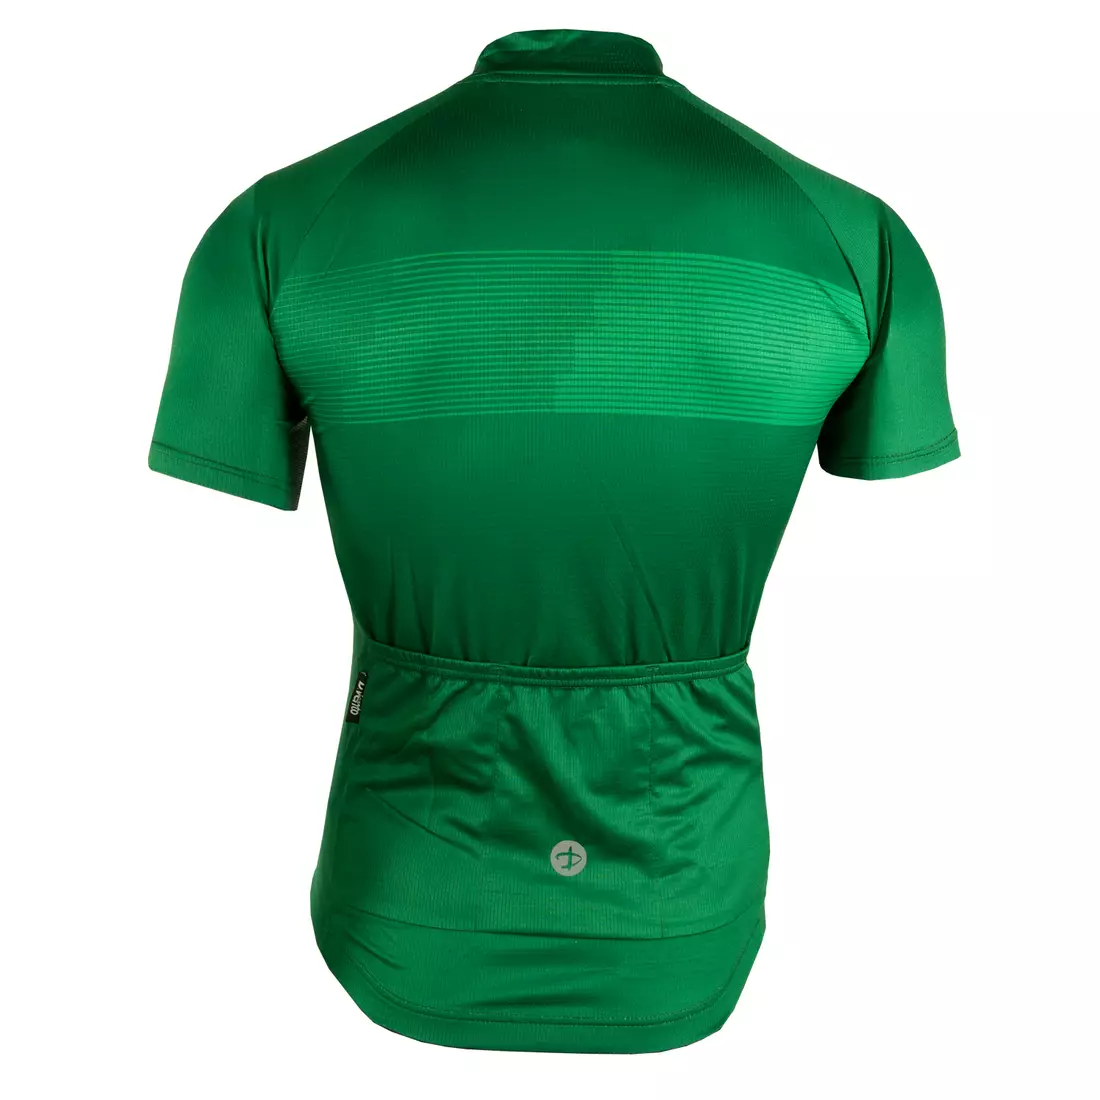 [Set] DEKO STYLE-0421 męska koszulka rowerowa z krótkim rękawem, zielony + DEKO POCKET spodenki rowerowe bez szelek, czarny